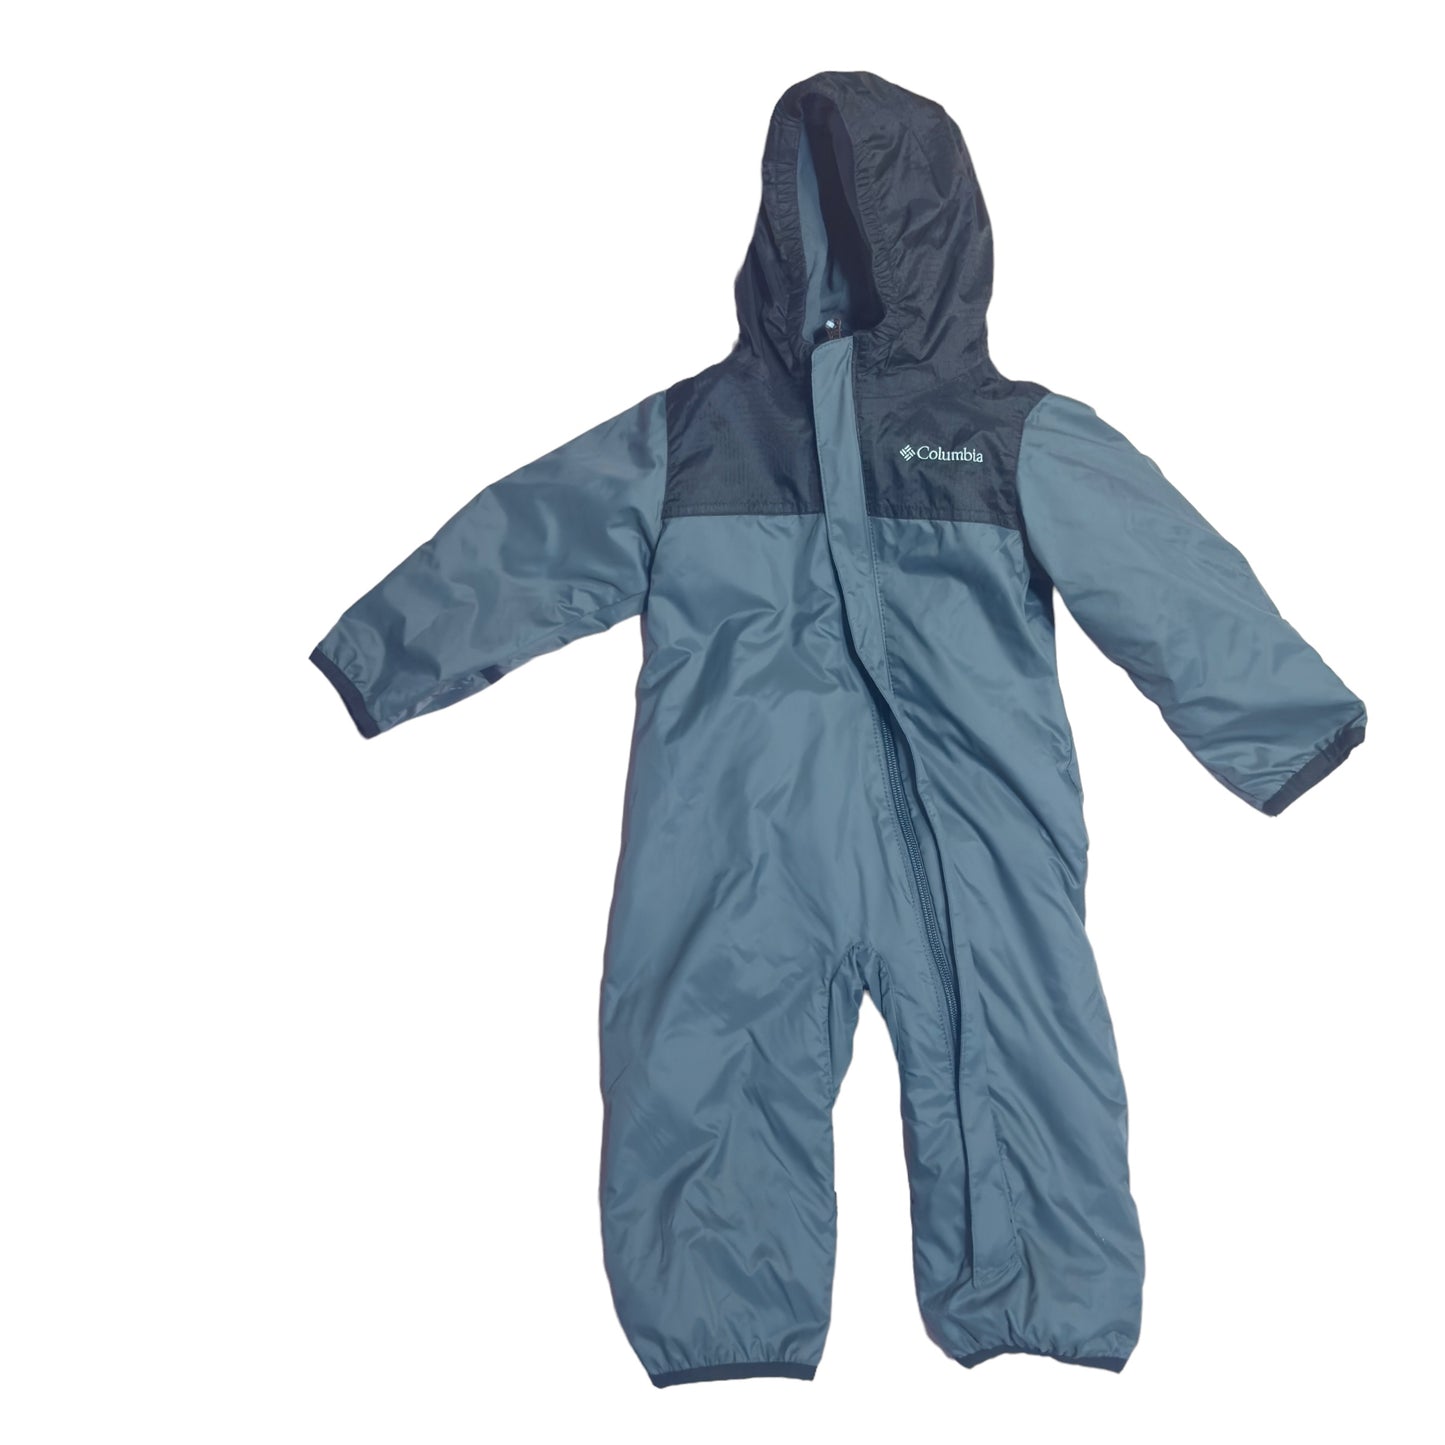 Columbia Rain/Snow Winter Suit | Size: 6-12 months | GUC